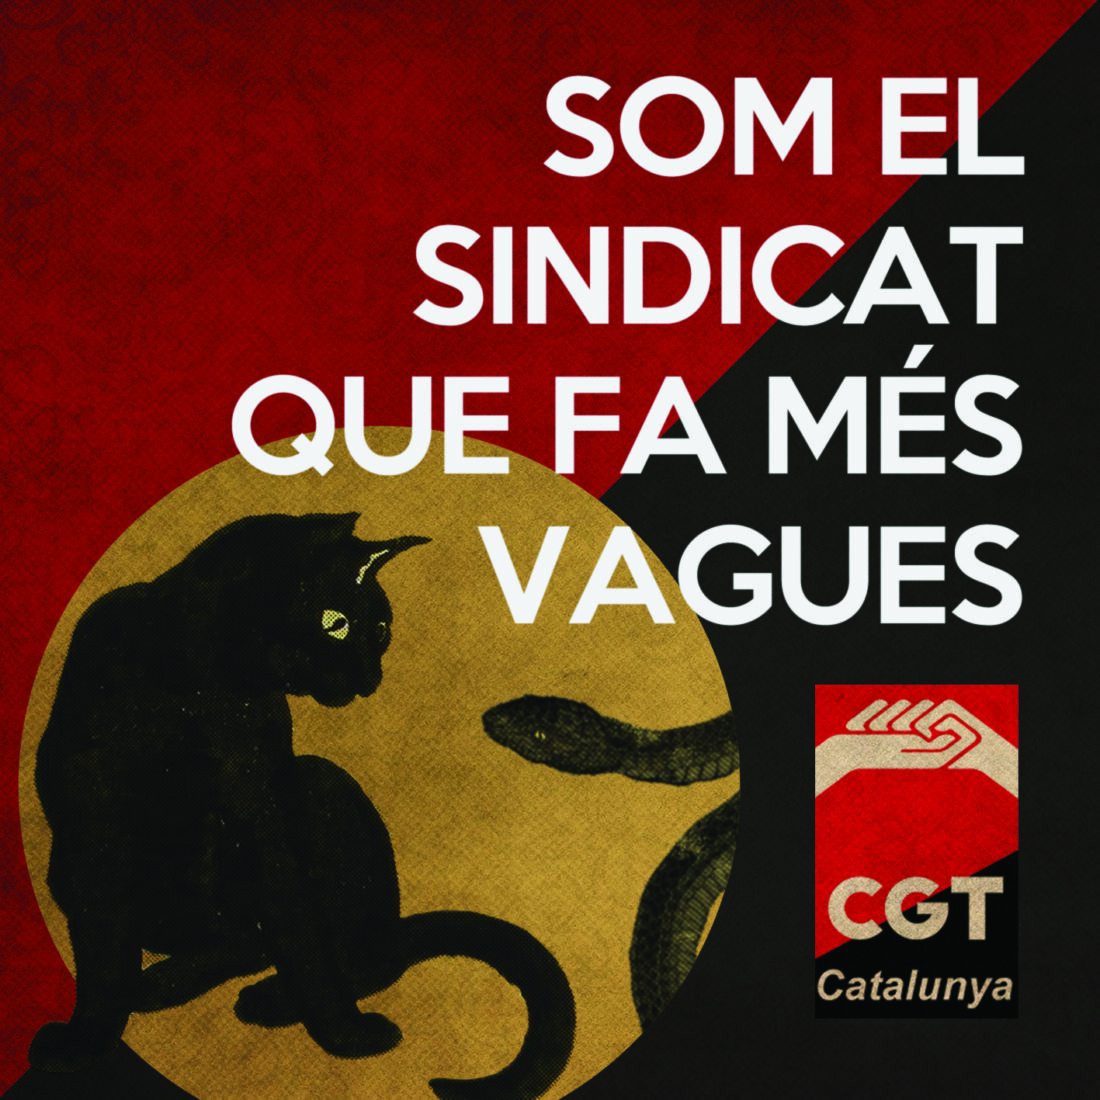 La CGT, sindicato que más huelgas convoca y con más seguimiento en Cataluña